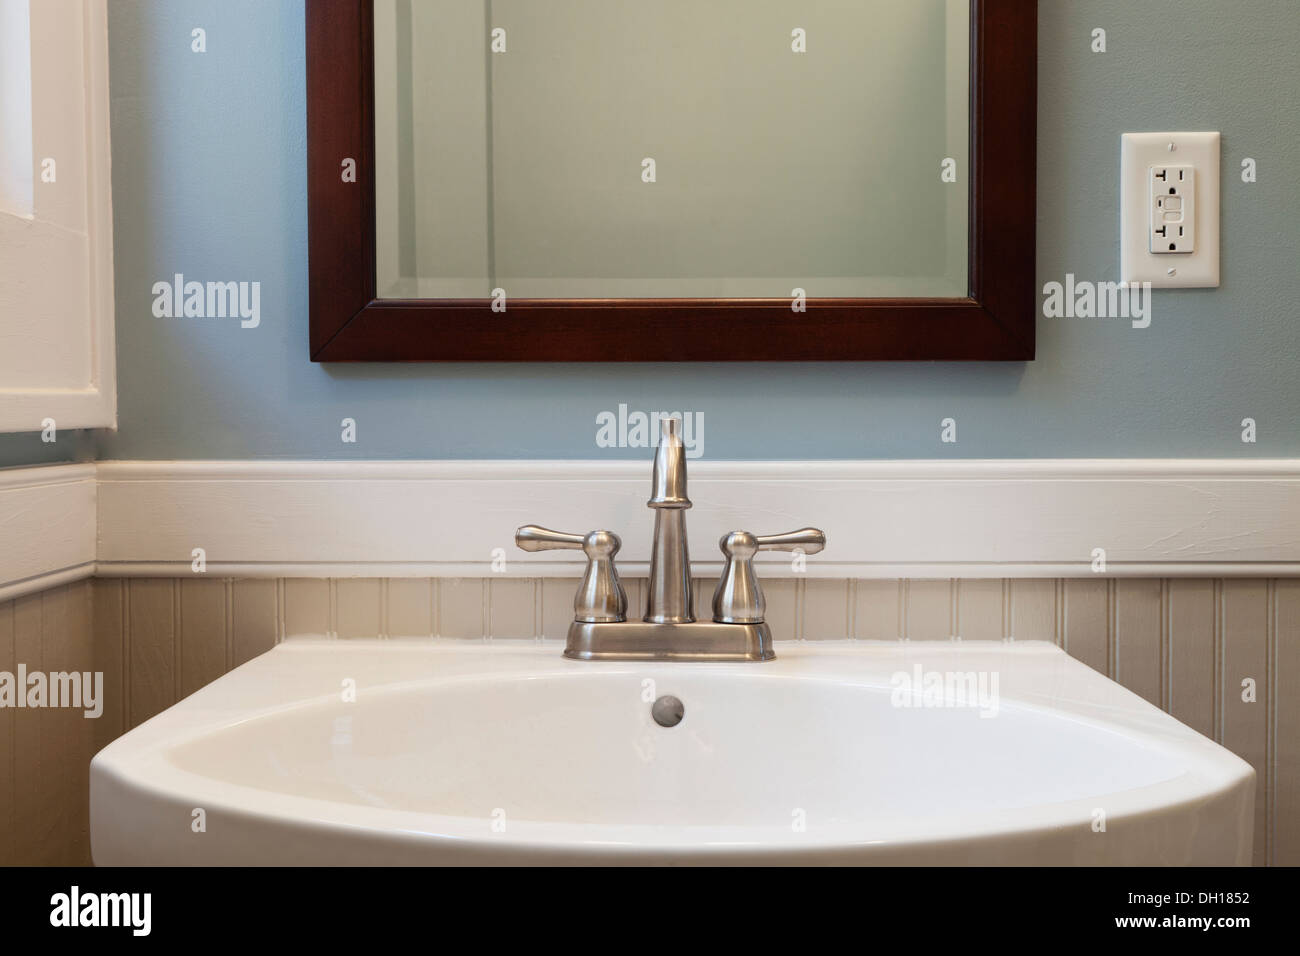 Lavabo et miroir dans salle de bains Banque D'Images